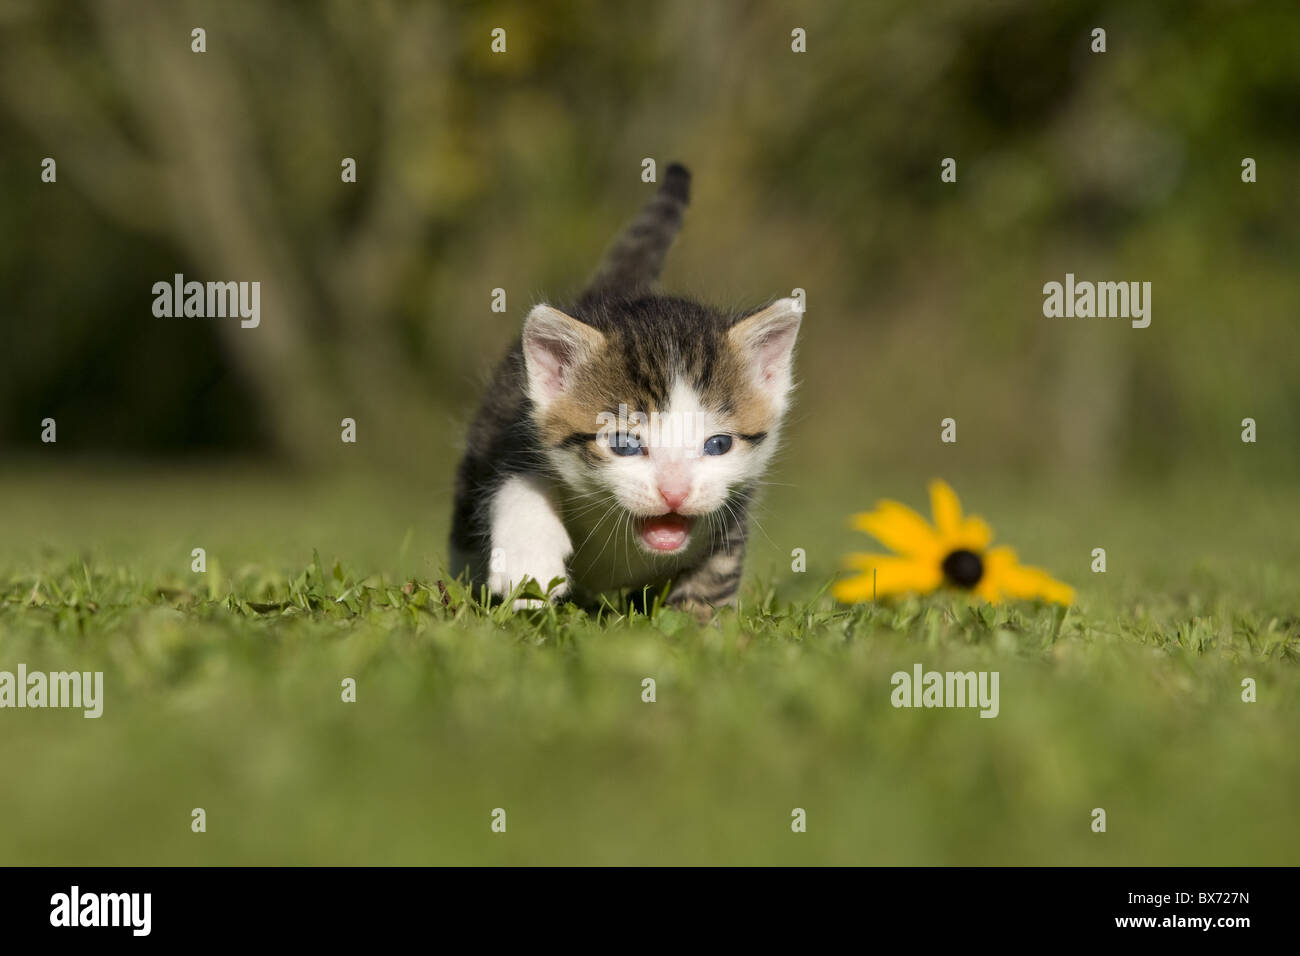 Katze, Kaetzchen gehend auf Wiese, Cat, kitten walking on a meadow Stock Photo